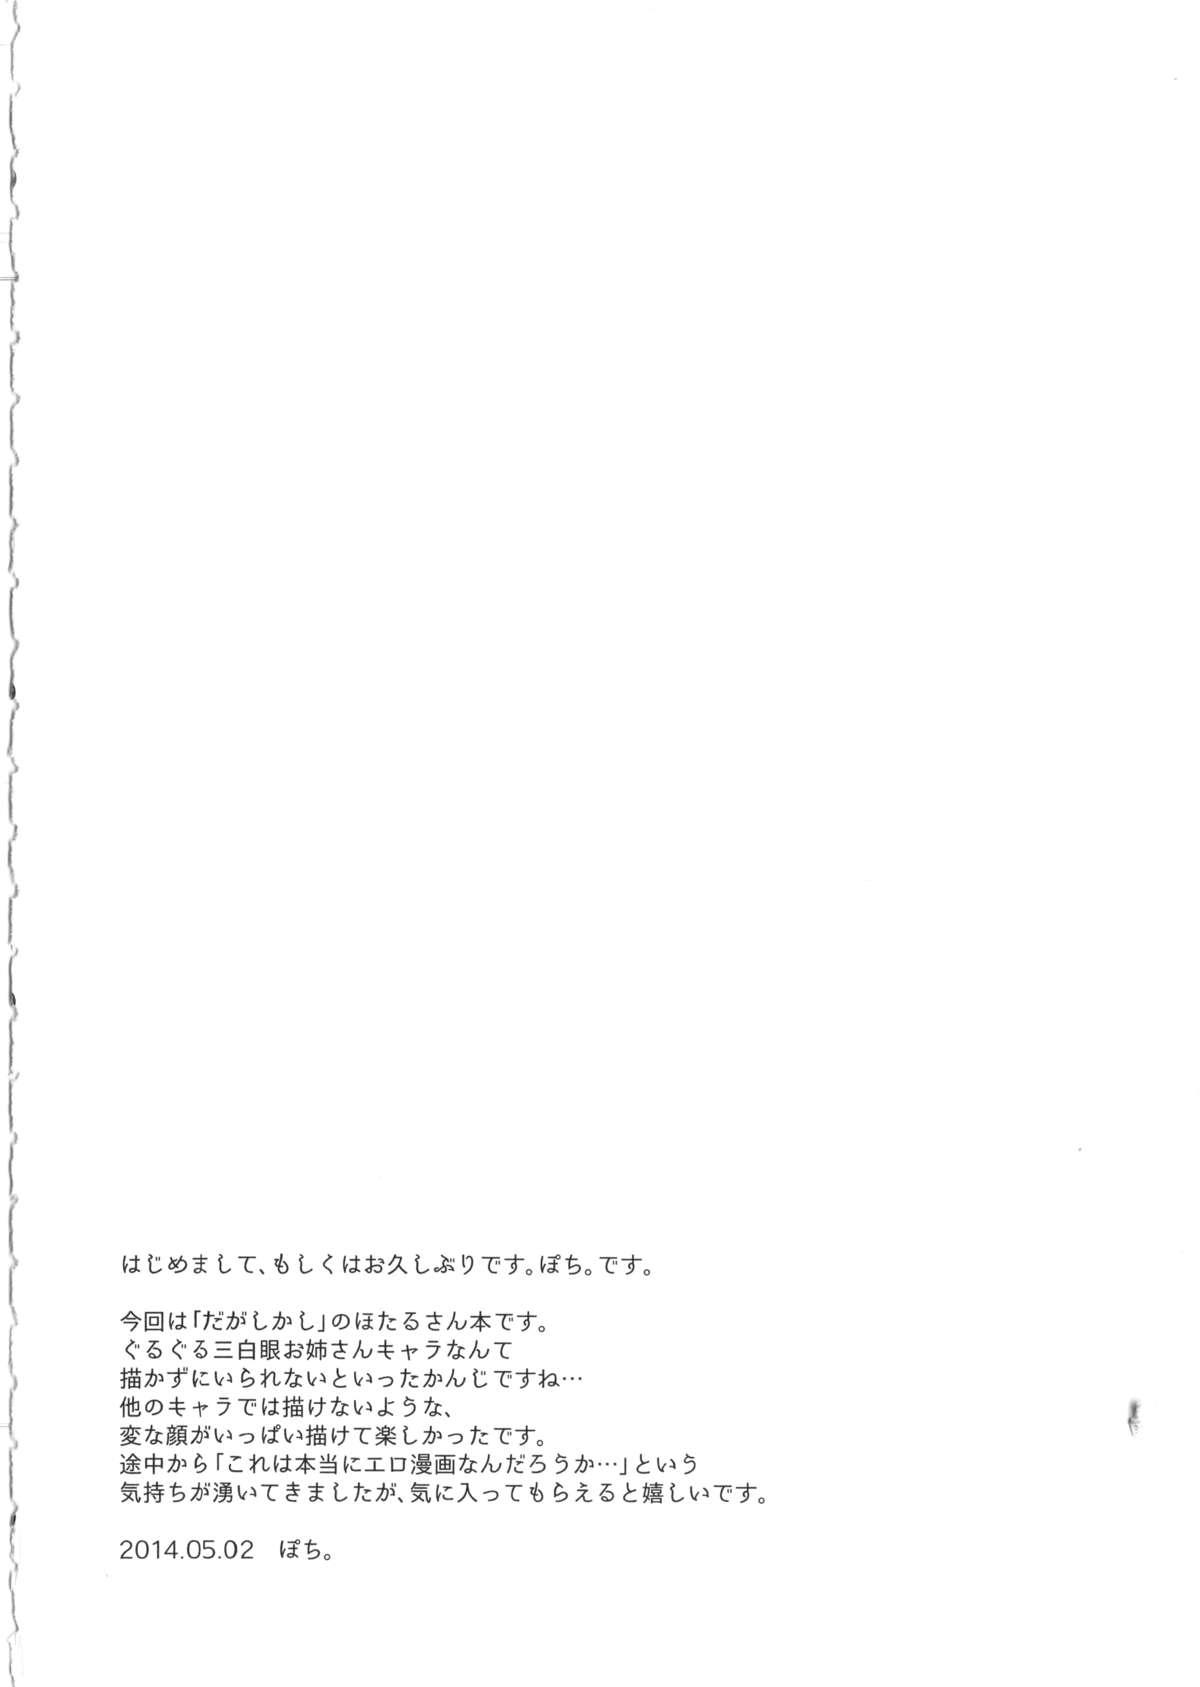 Punished Otona no dagashi - Dagashi kashi Gay Physicals - Page 3